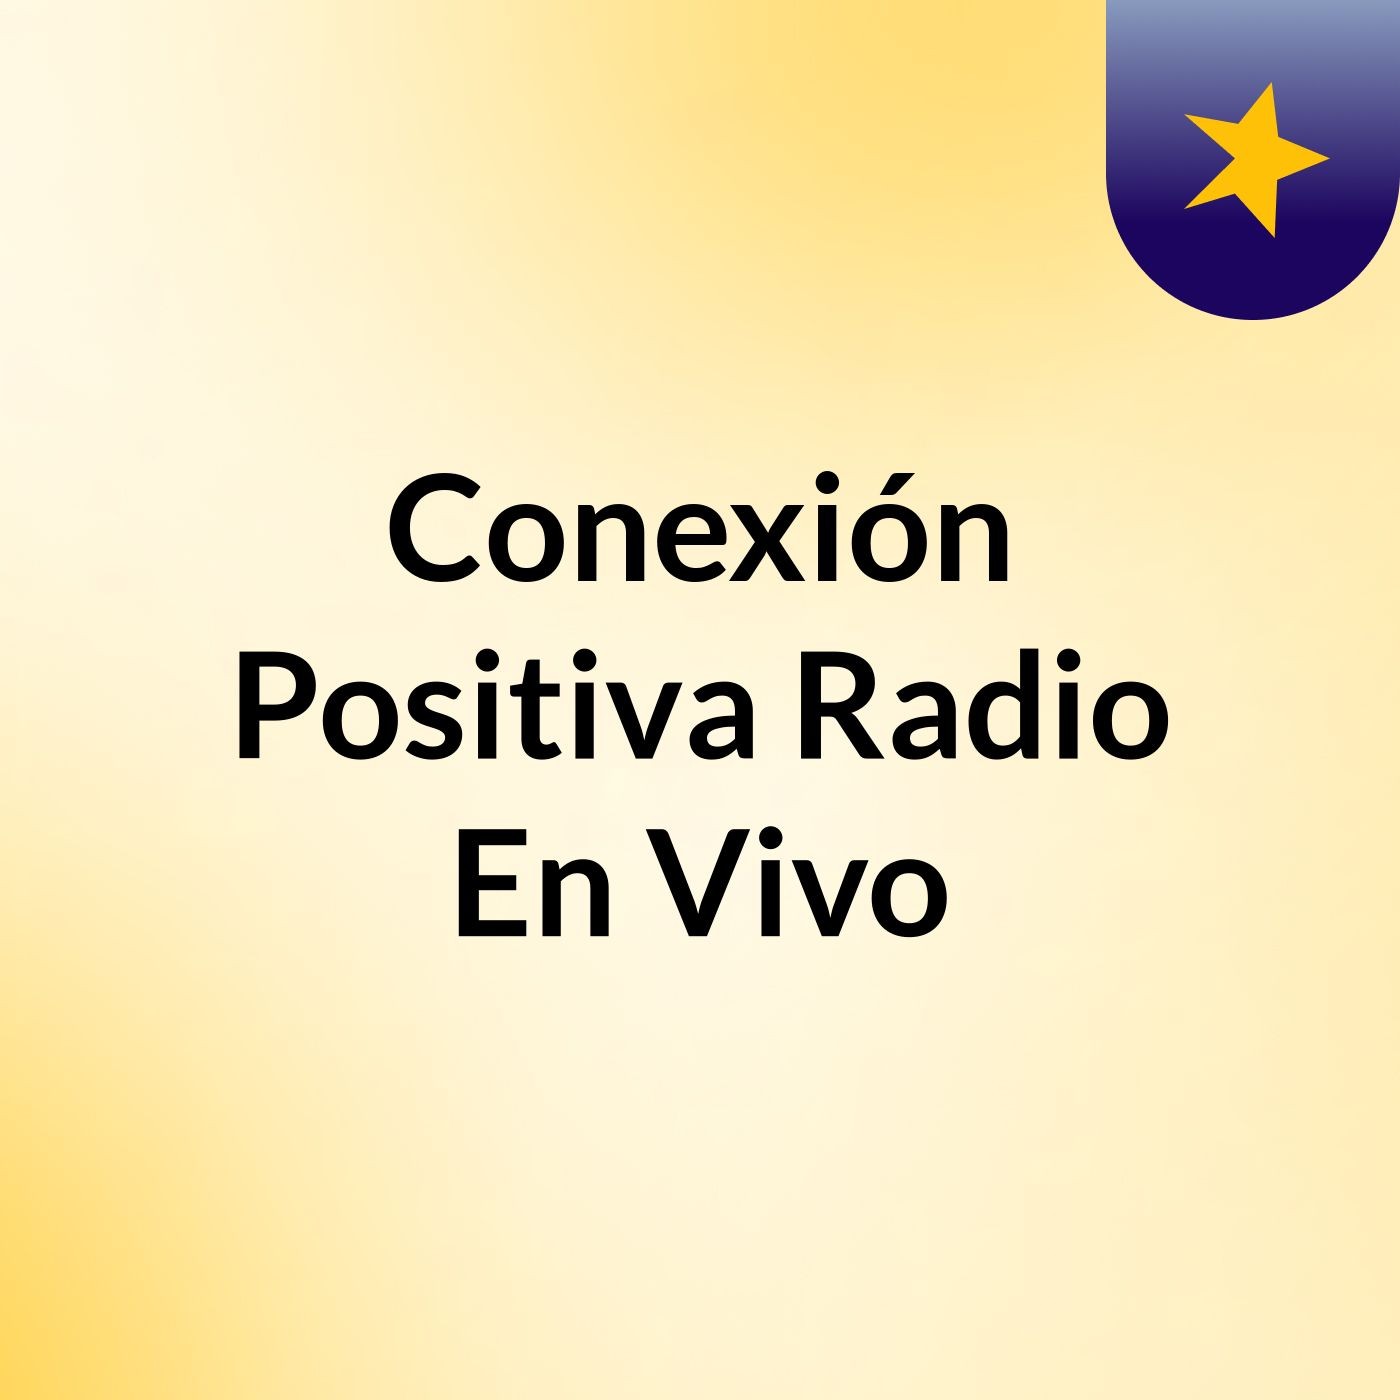 Episodio 2 - Conexión Positiva Radio En Vivo